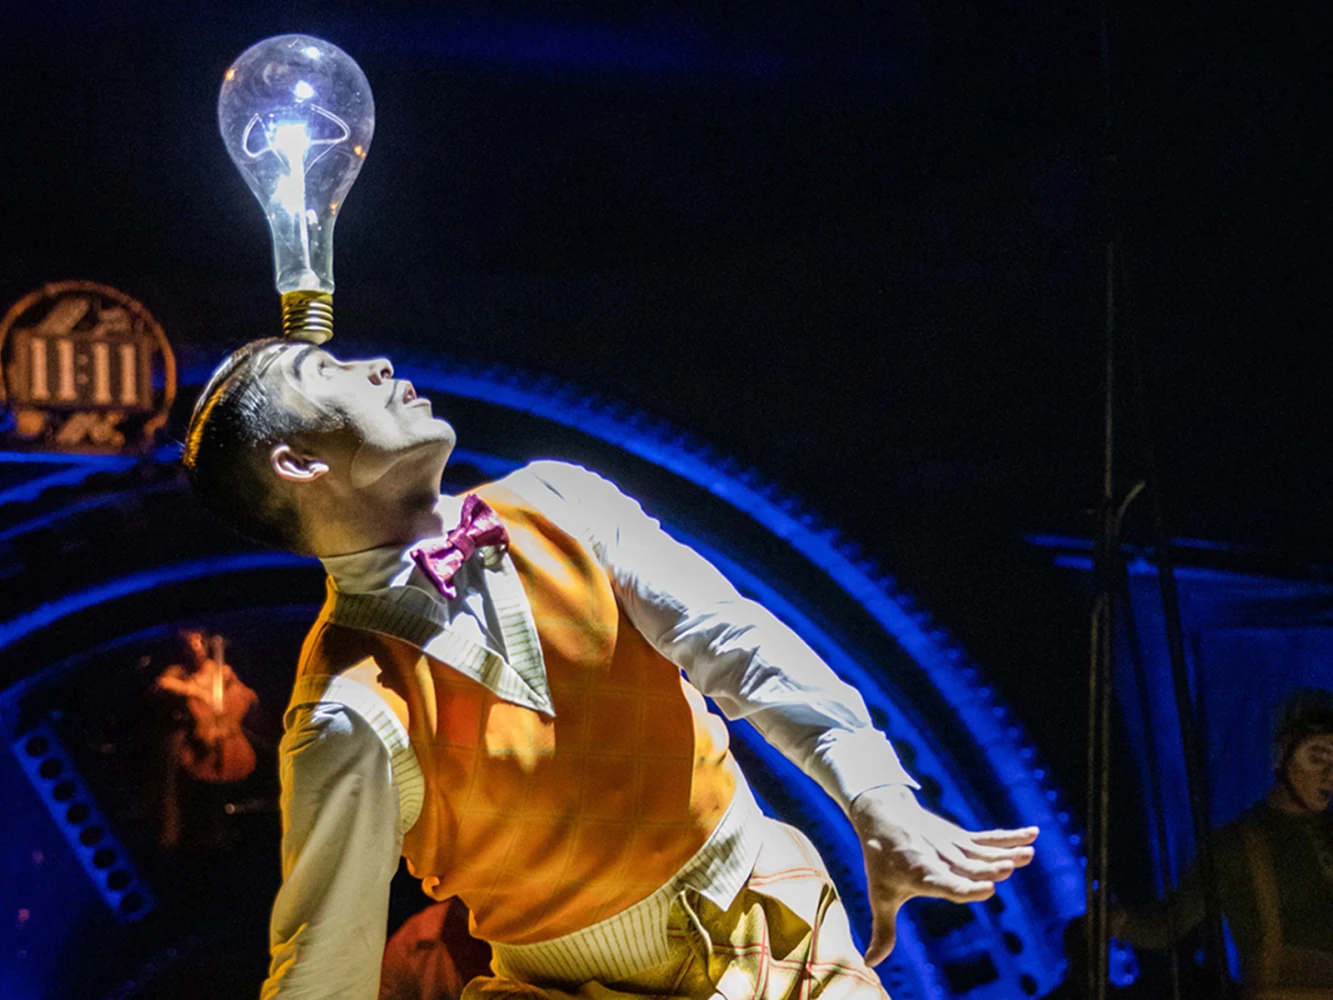 Cirque du Soleil - Kurios: What to expect - 3